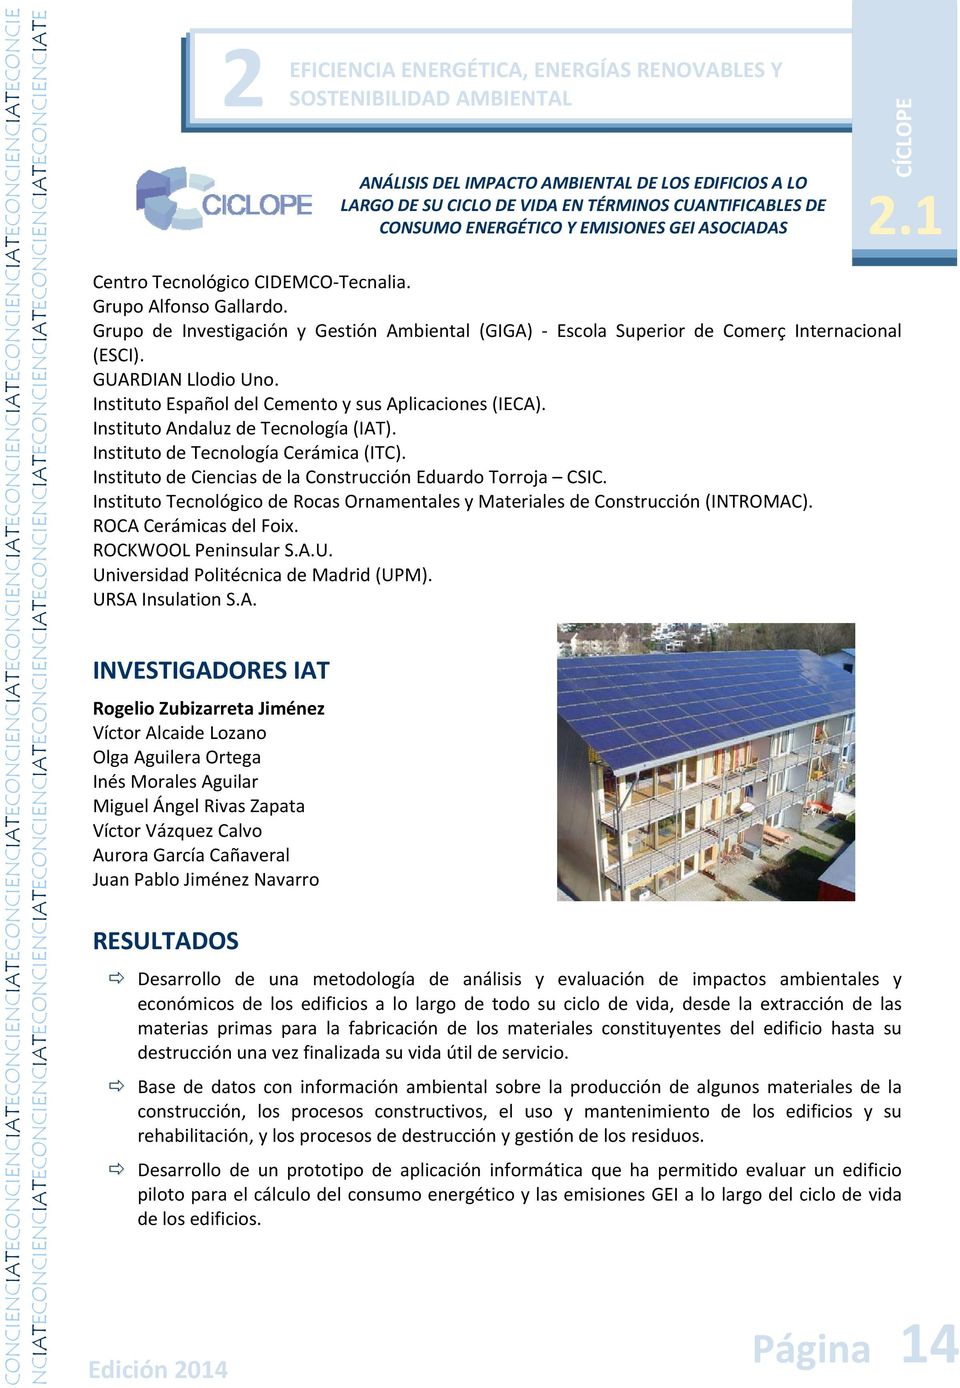 Instituto Tecnológico de Rocas Ornamentales y Materiales de Construcción (INTROMAC